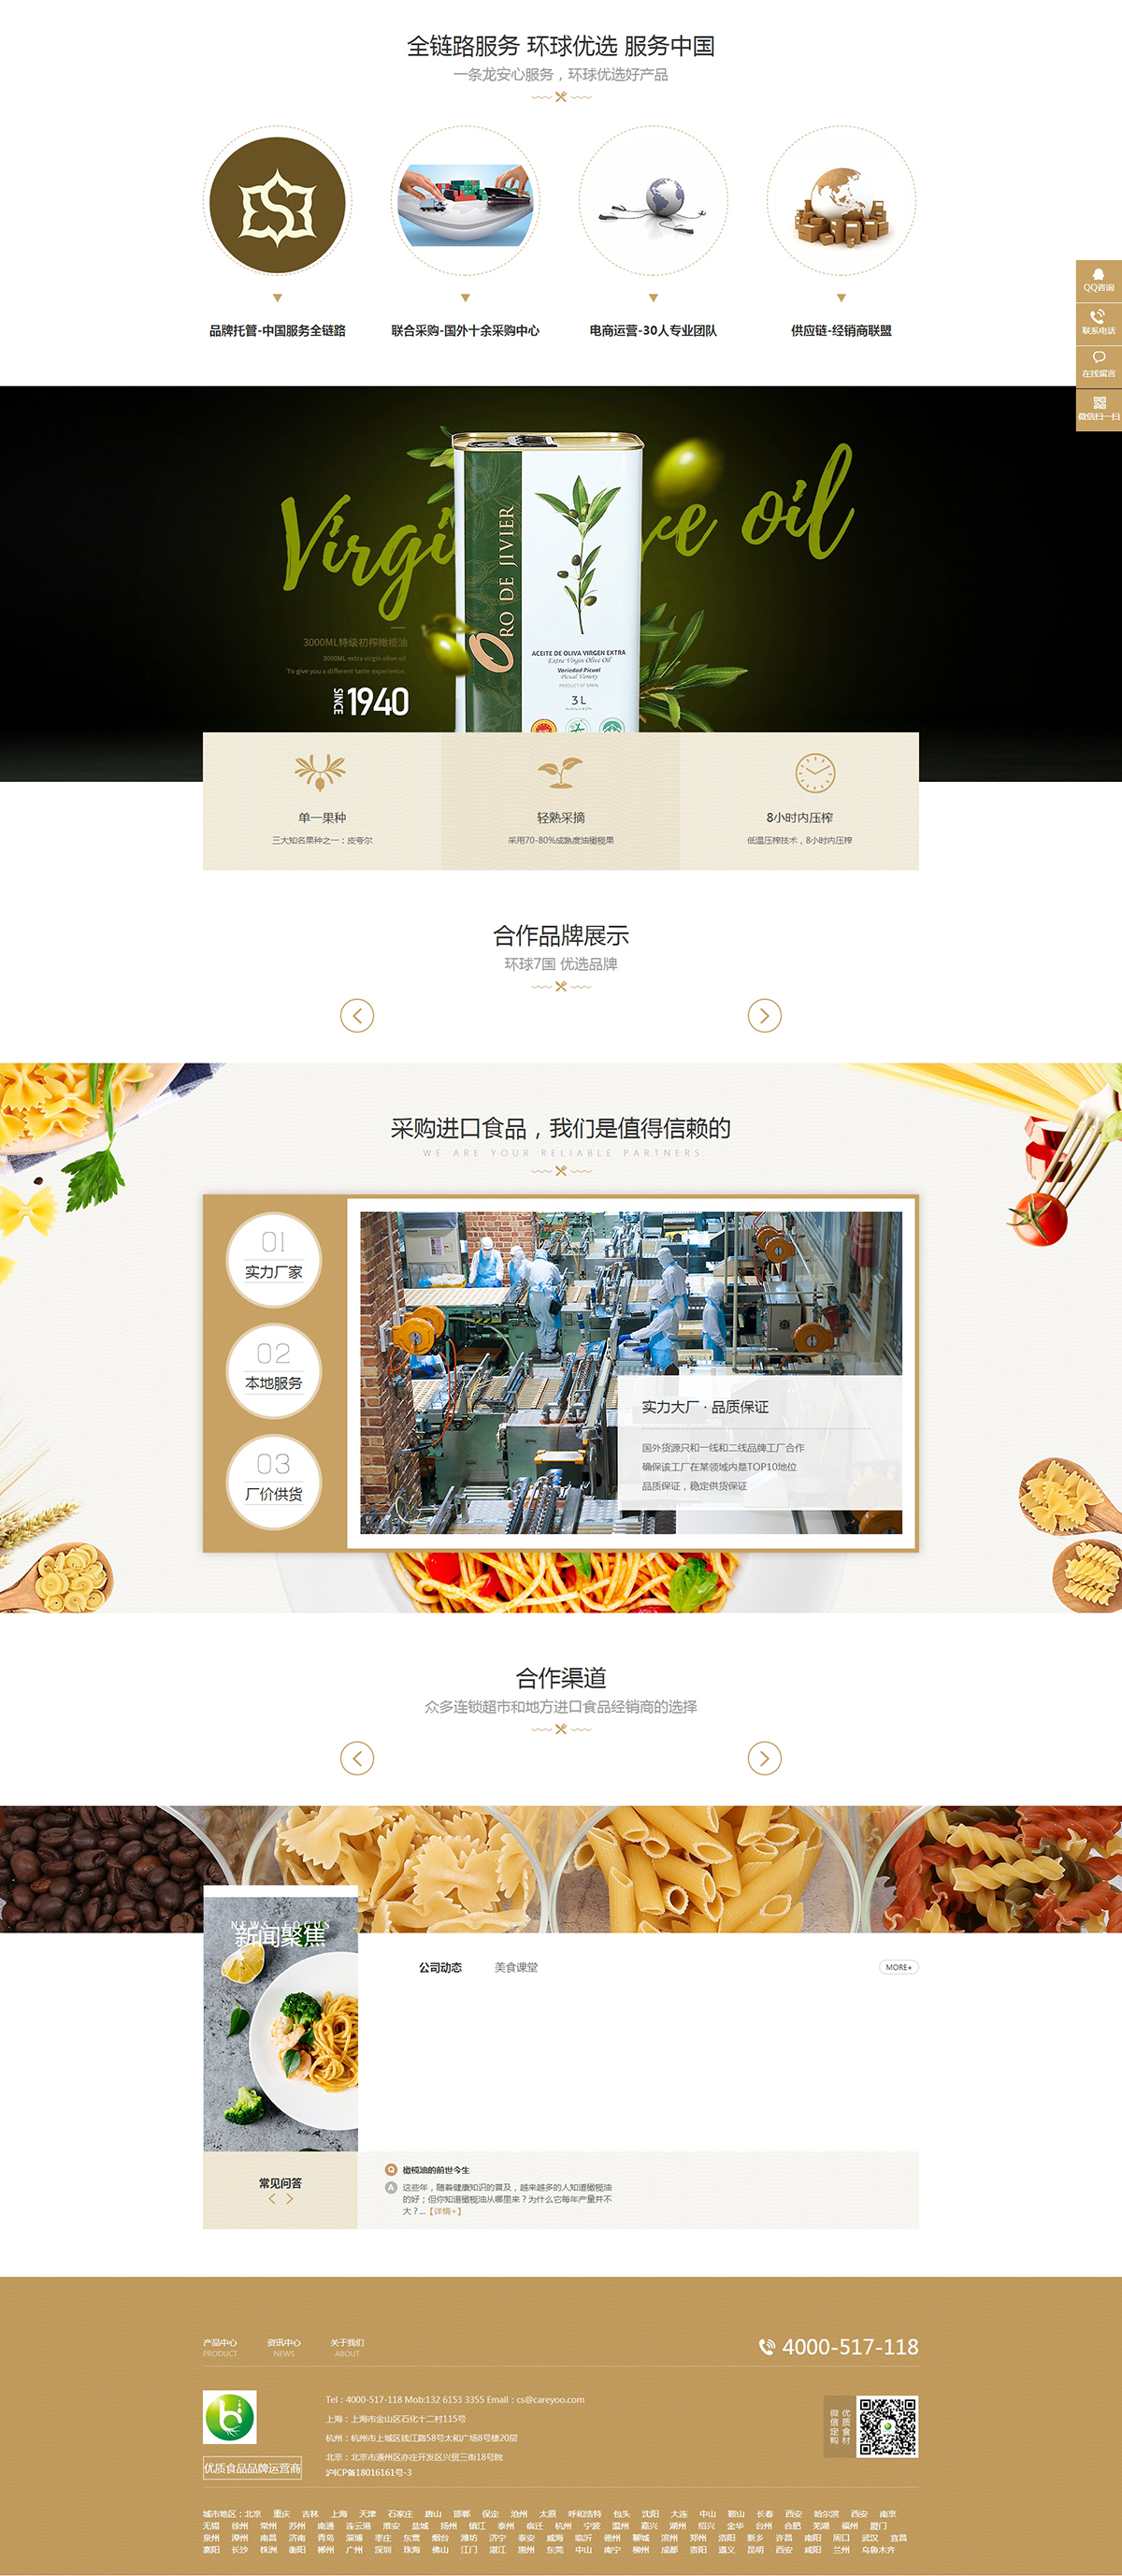 上海康煜健康科技有限公司网站制作案例